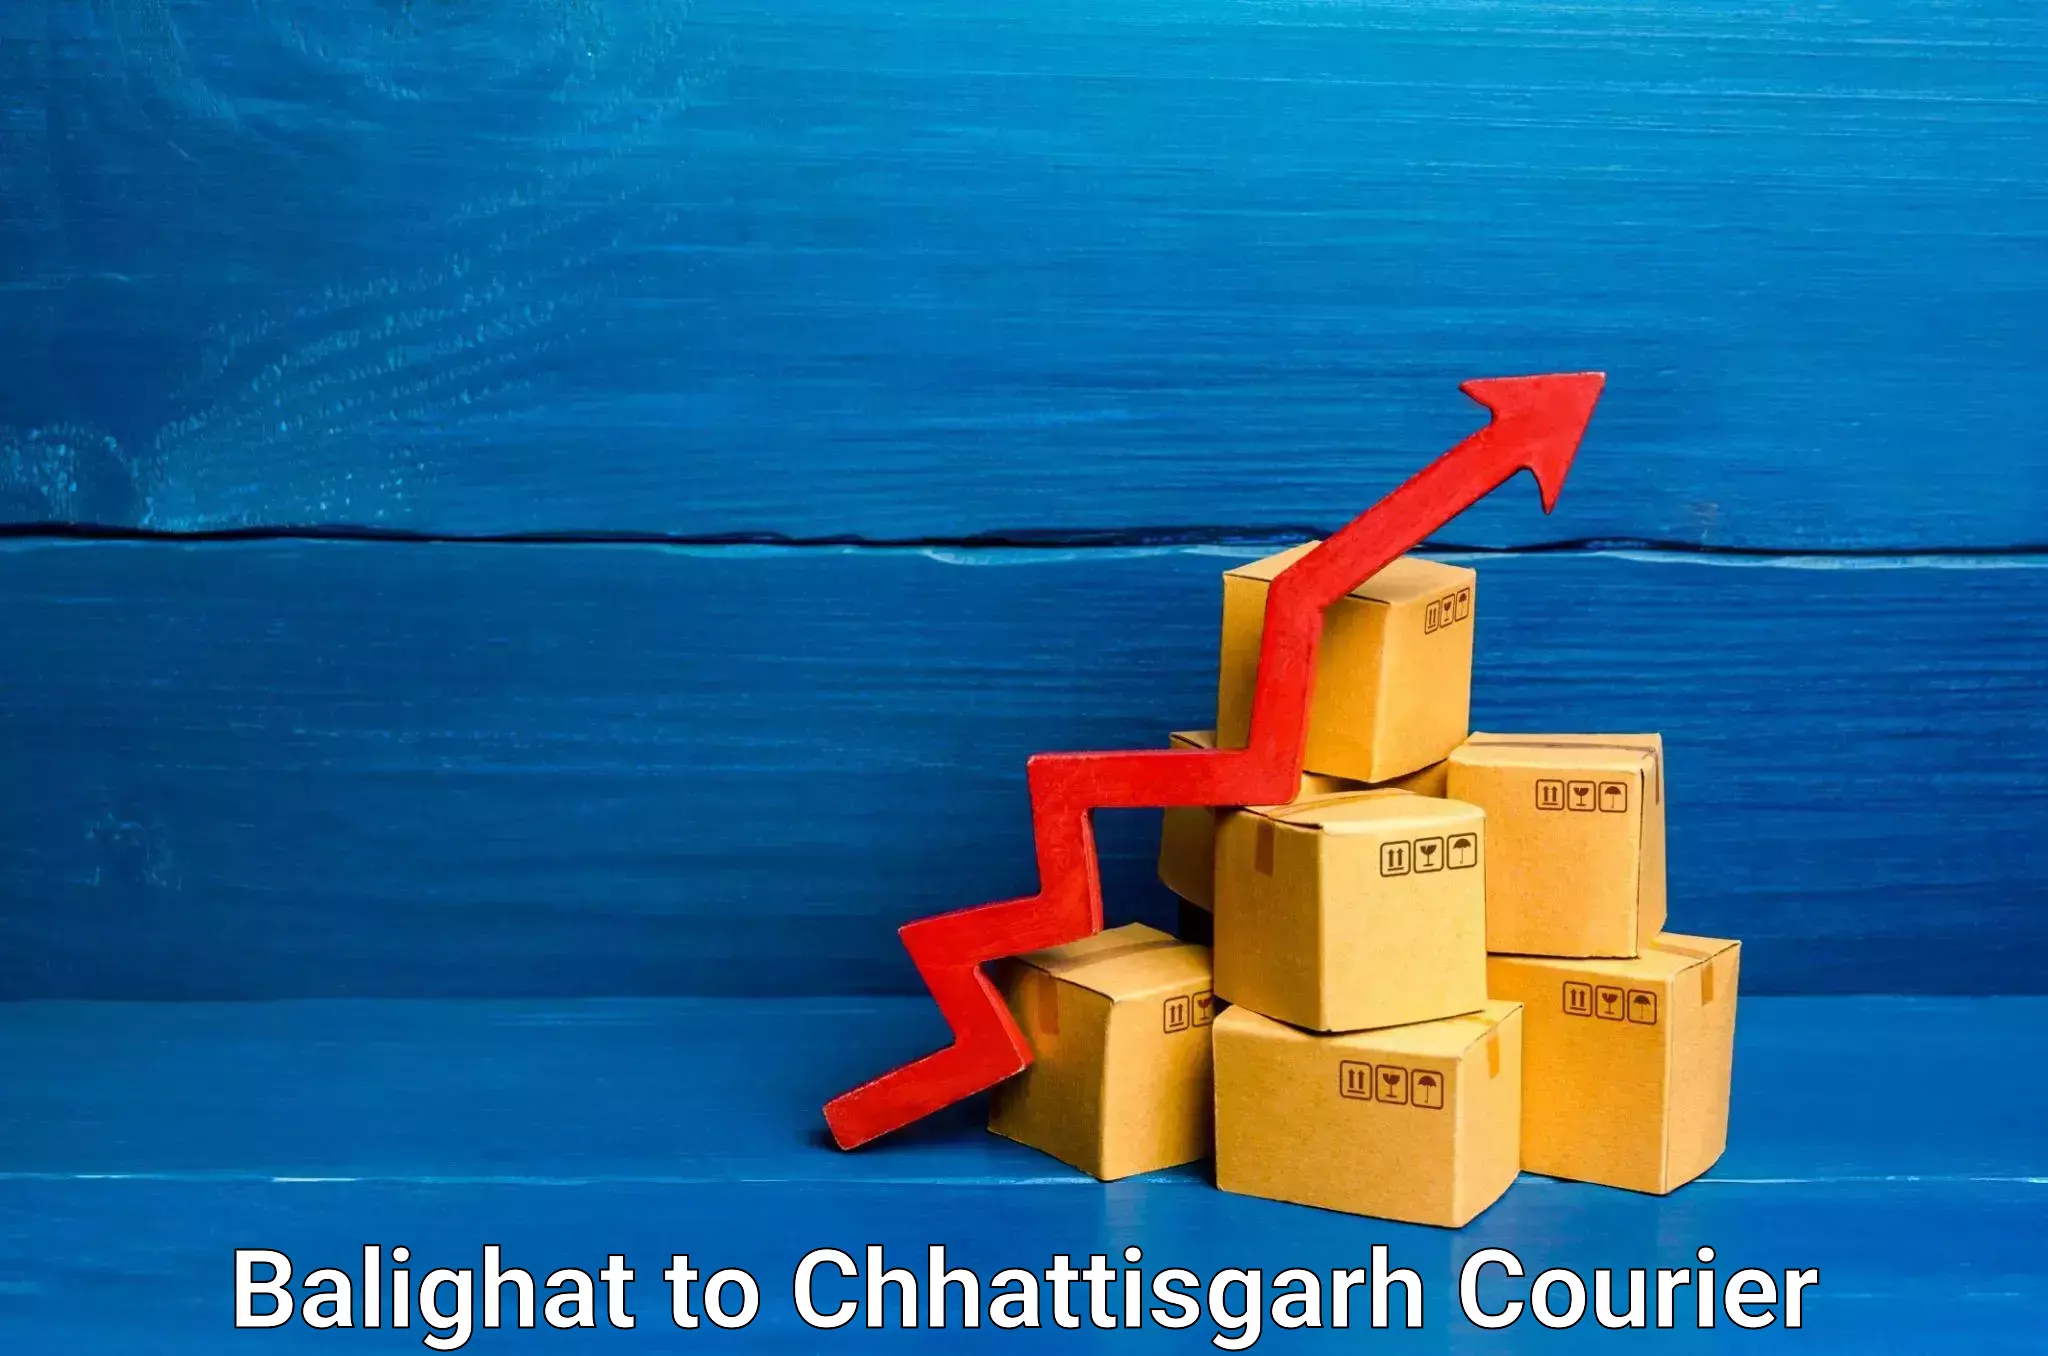 Custom courier strategies Balighat to Raigarh Chhattisgarh